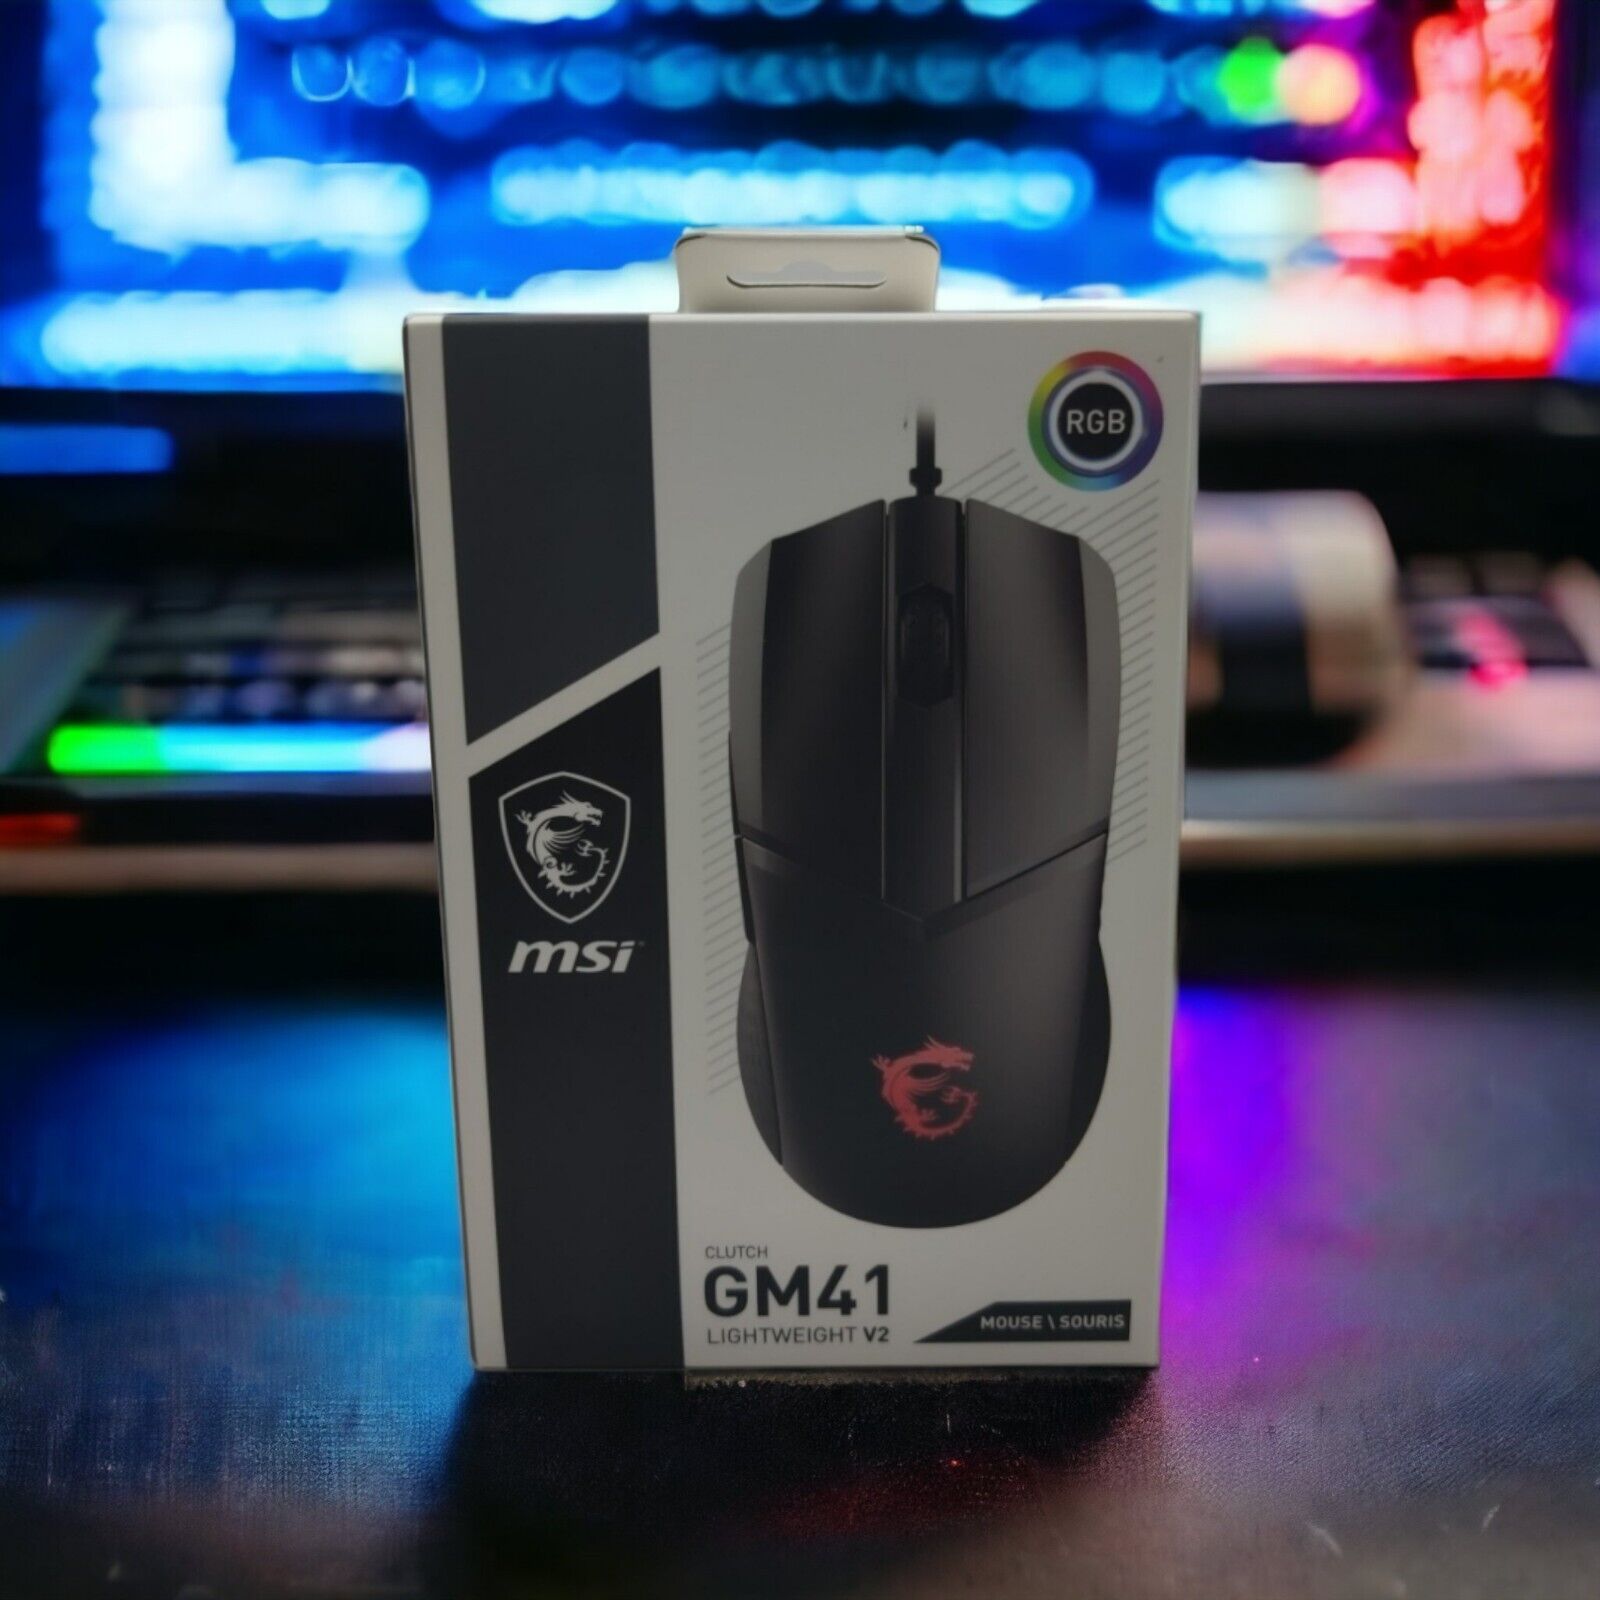 MSI Clutch GM41 Lightweight V2 Gaming Mouse - ClutchGM41V2 RGB Windows 